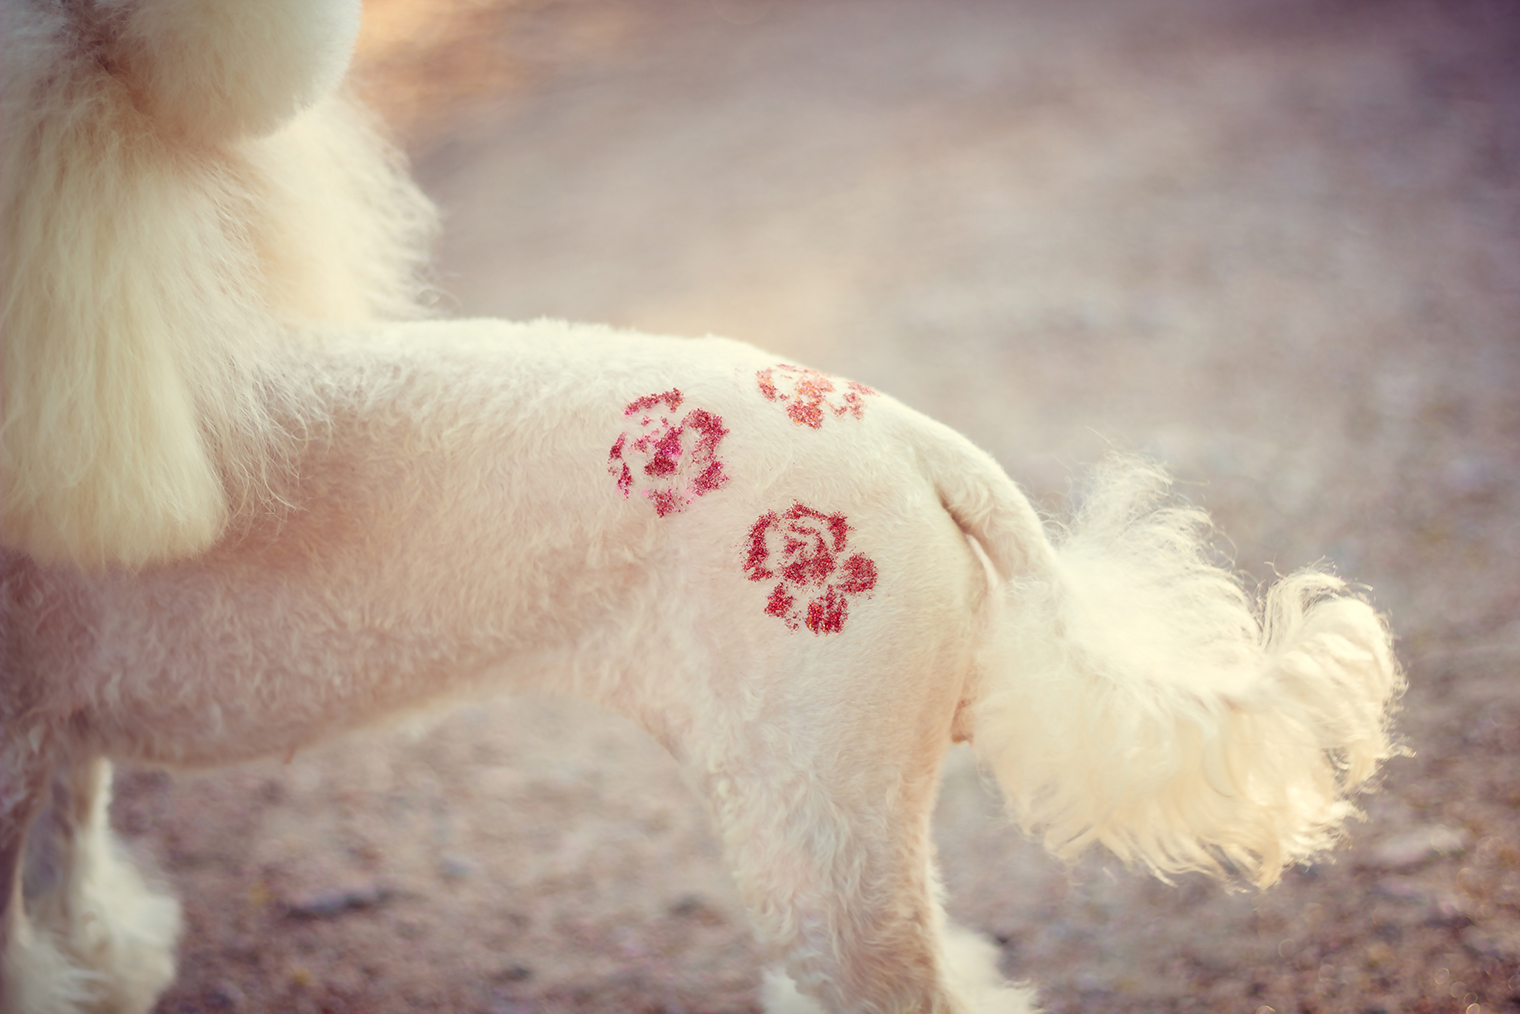 Вариант блеск⁠-⁠тату в форме роз. Фотография: alenka2194 / Shutterstock